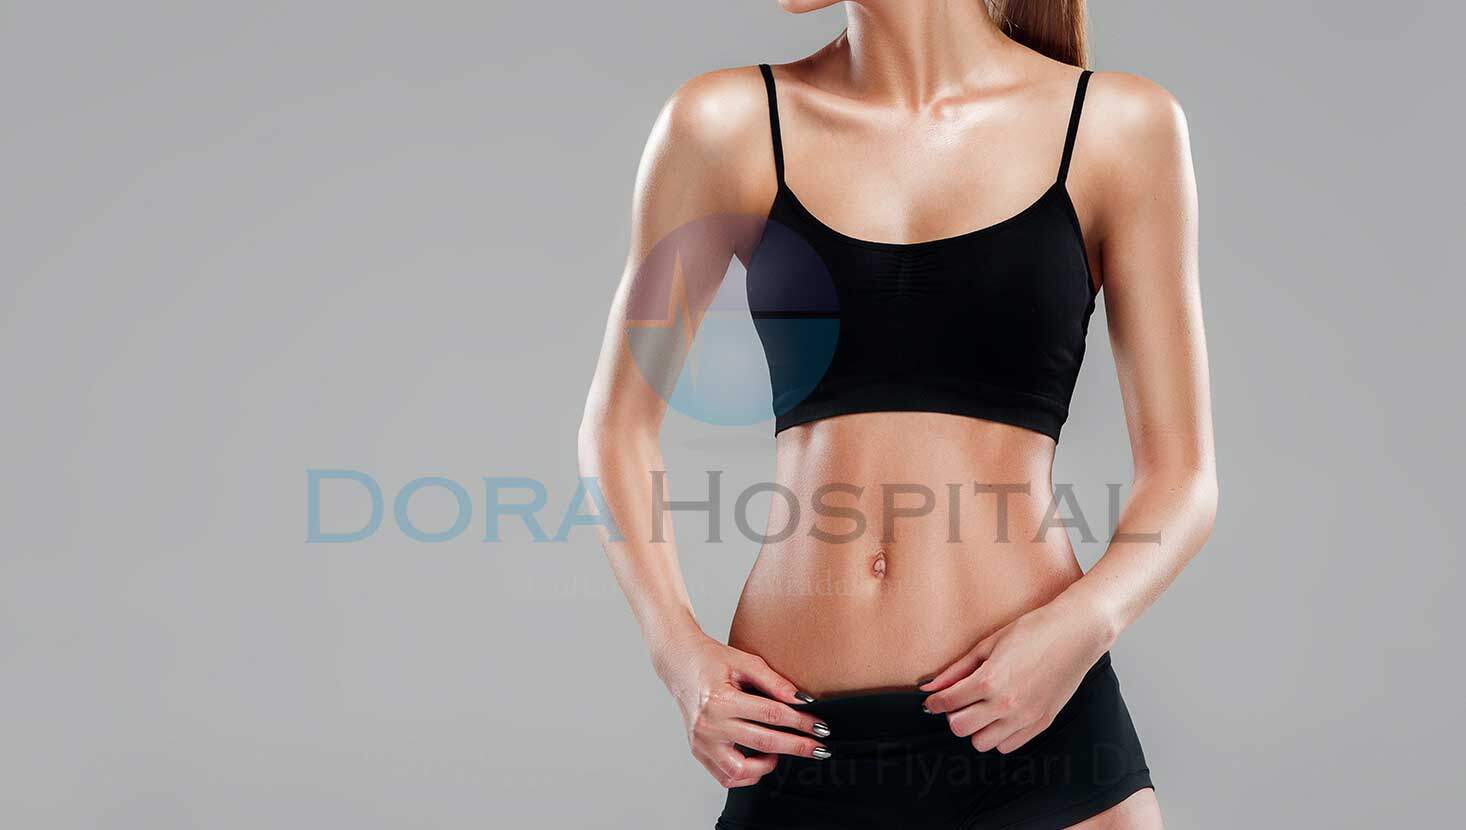 Vücut Şekillendirme Ameliyatı Fiyatları Dora Hospital